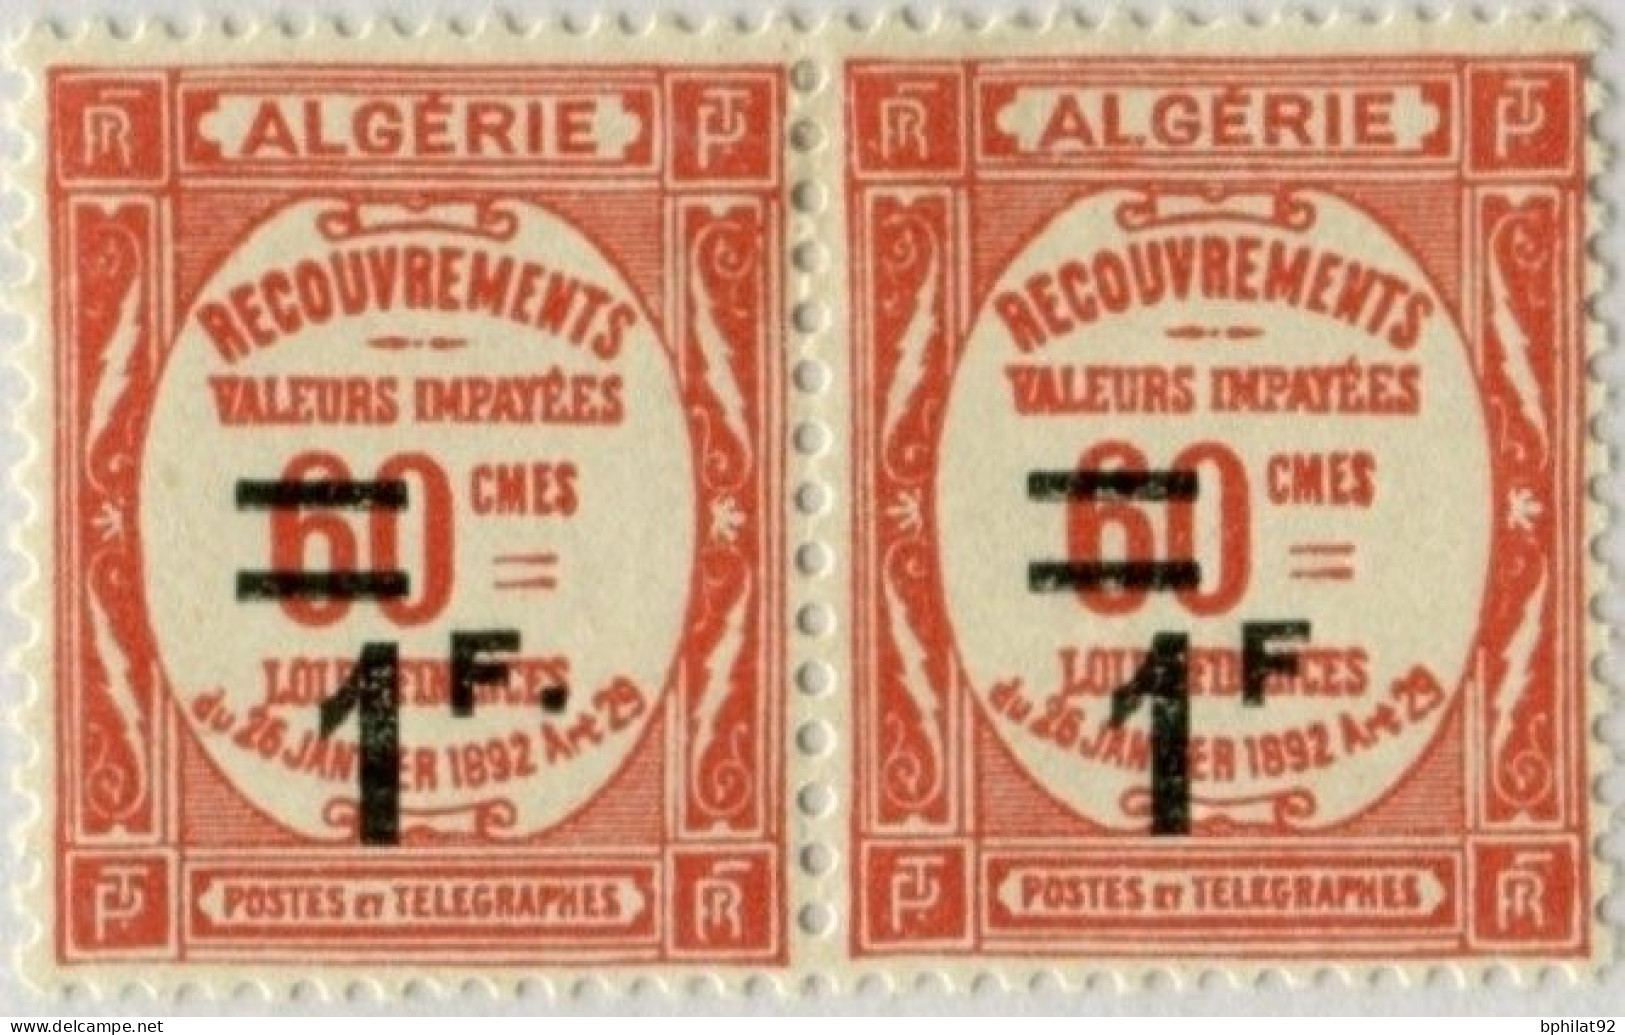 !!! ALGERIE : PAIRE DE TAXES N°23/23a VARIETE SANS POINT APRES F TENANT A NORMAL. PAIRE NEUVE CHARNIERE PROPRE - Postage Due